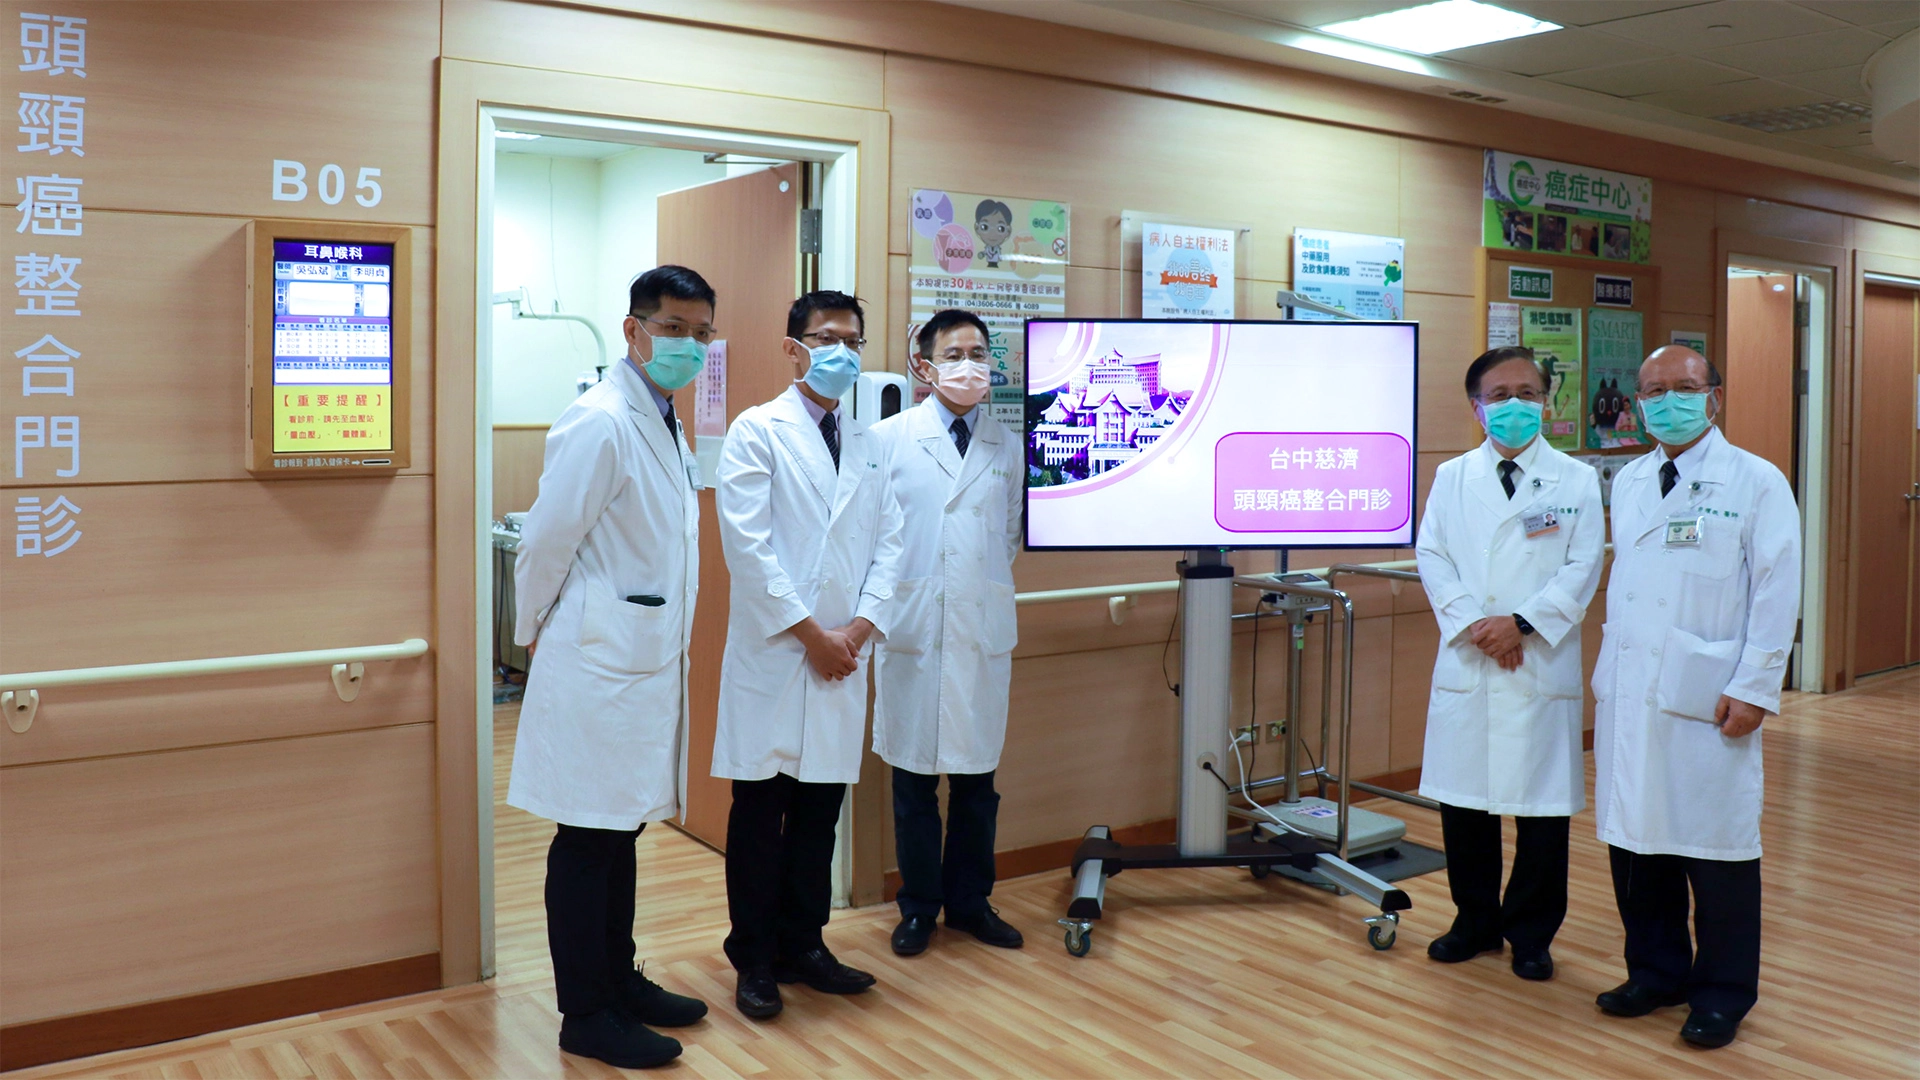 （由右至左）耳科權威許權振副院長、簡守信院長、耳鼻喉部主任吳弘斌、頭頸外科主任周一帆、張展榕醫師。